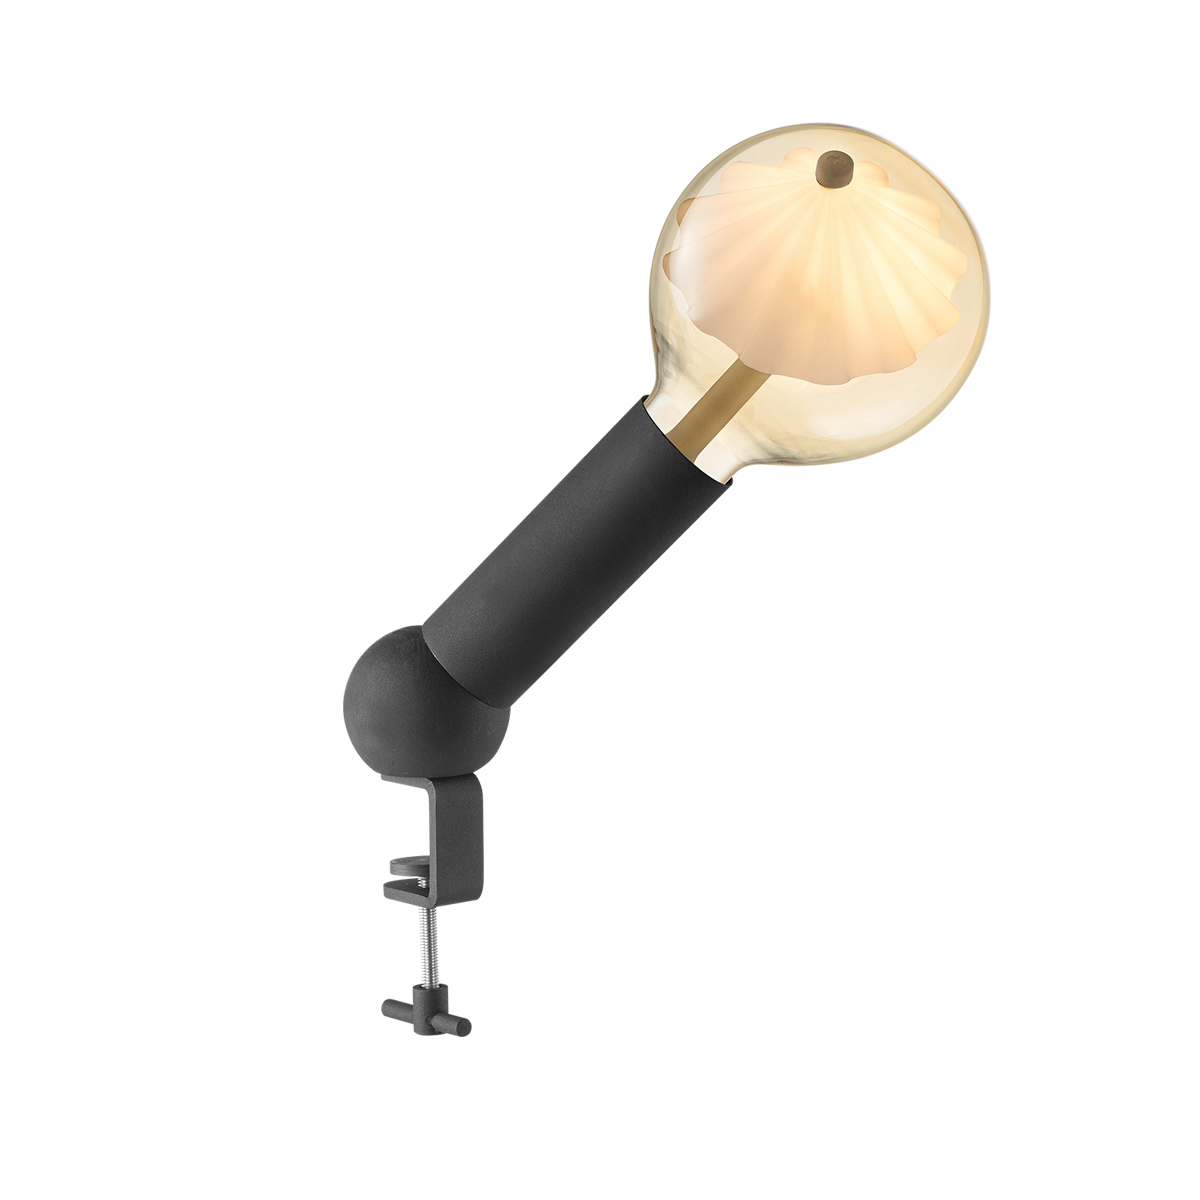 Tangla lighting - TLT7044-24SB - Table lamp 1 Light - metal - move me globus - sand black - large - E27